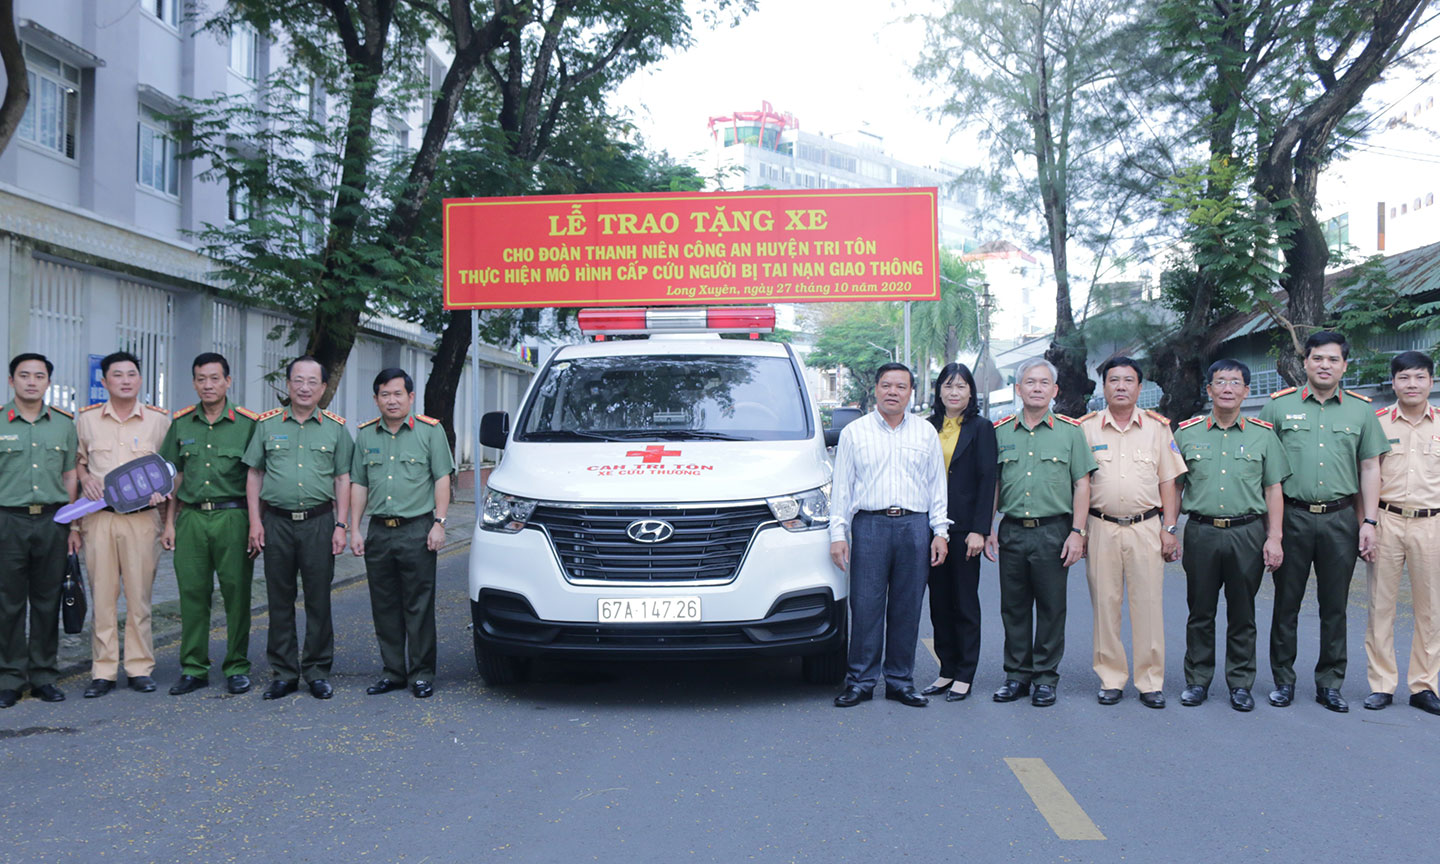 Ông Lê Xuân Quế - Phó TGĐ Sao Mai Group (thứ 7 phải qua) trao xe cứu thương cho đại diện Công an huyện Tri Tôn dưới sự chứng kiến của Thượng tướng Nguyễn Văn Thành - Thứ Trưởng Bộ Công An.